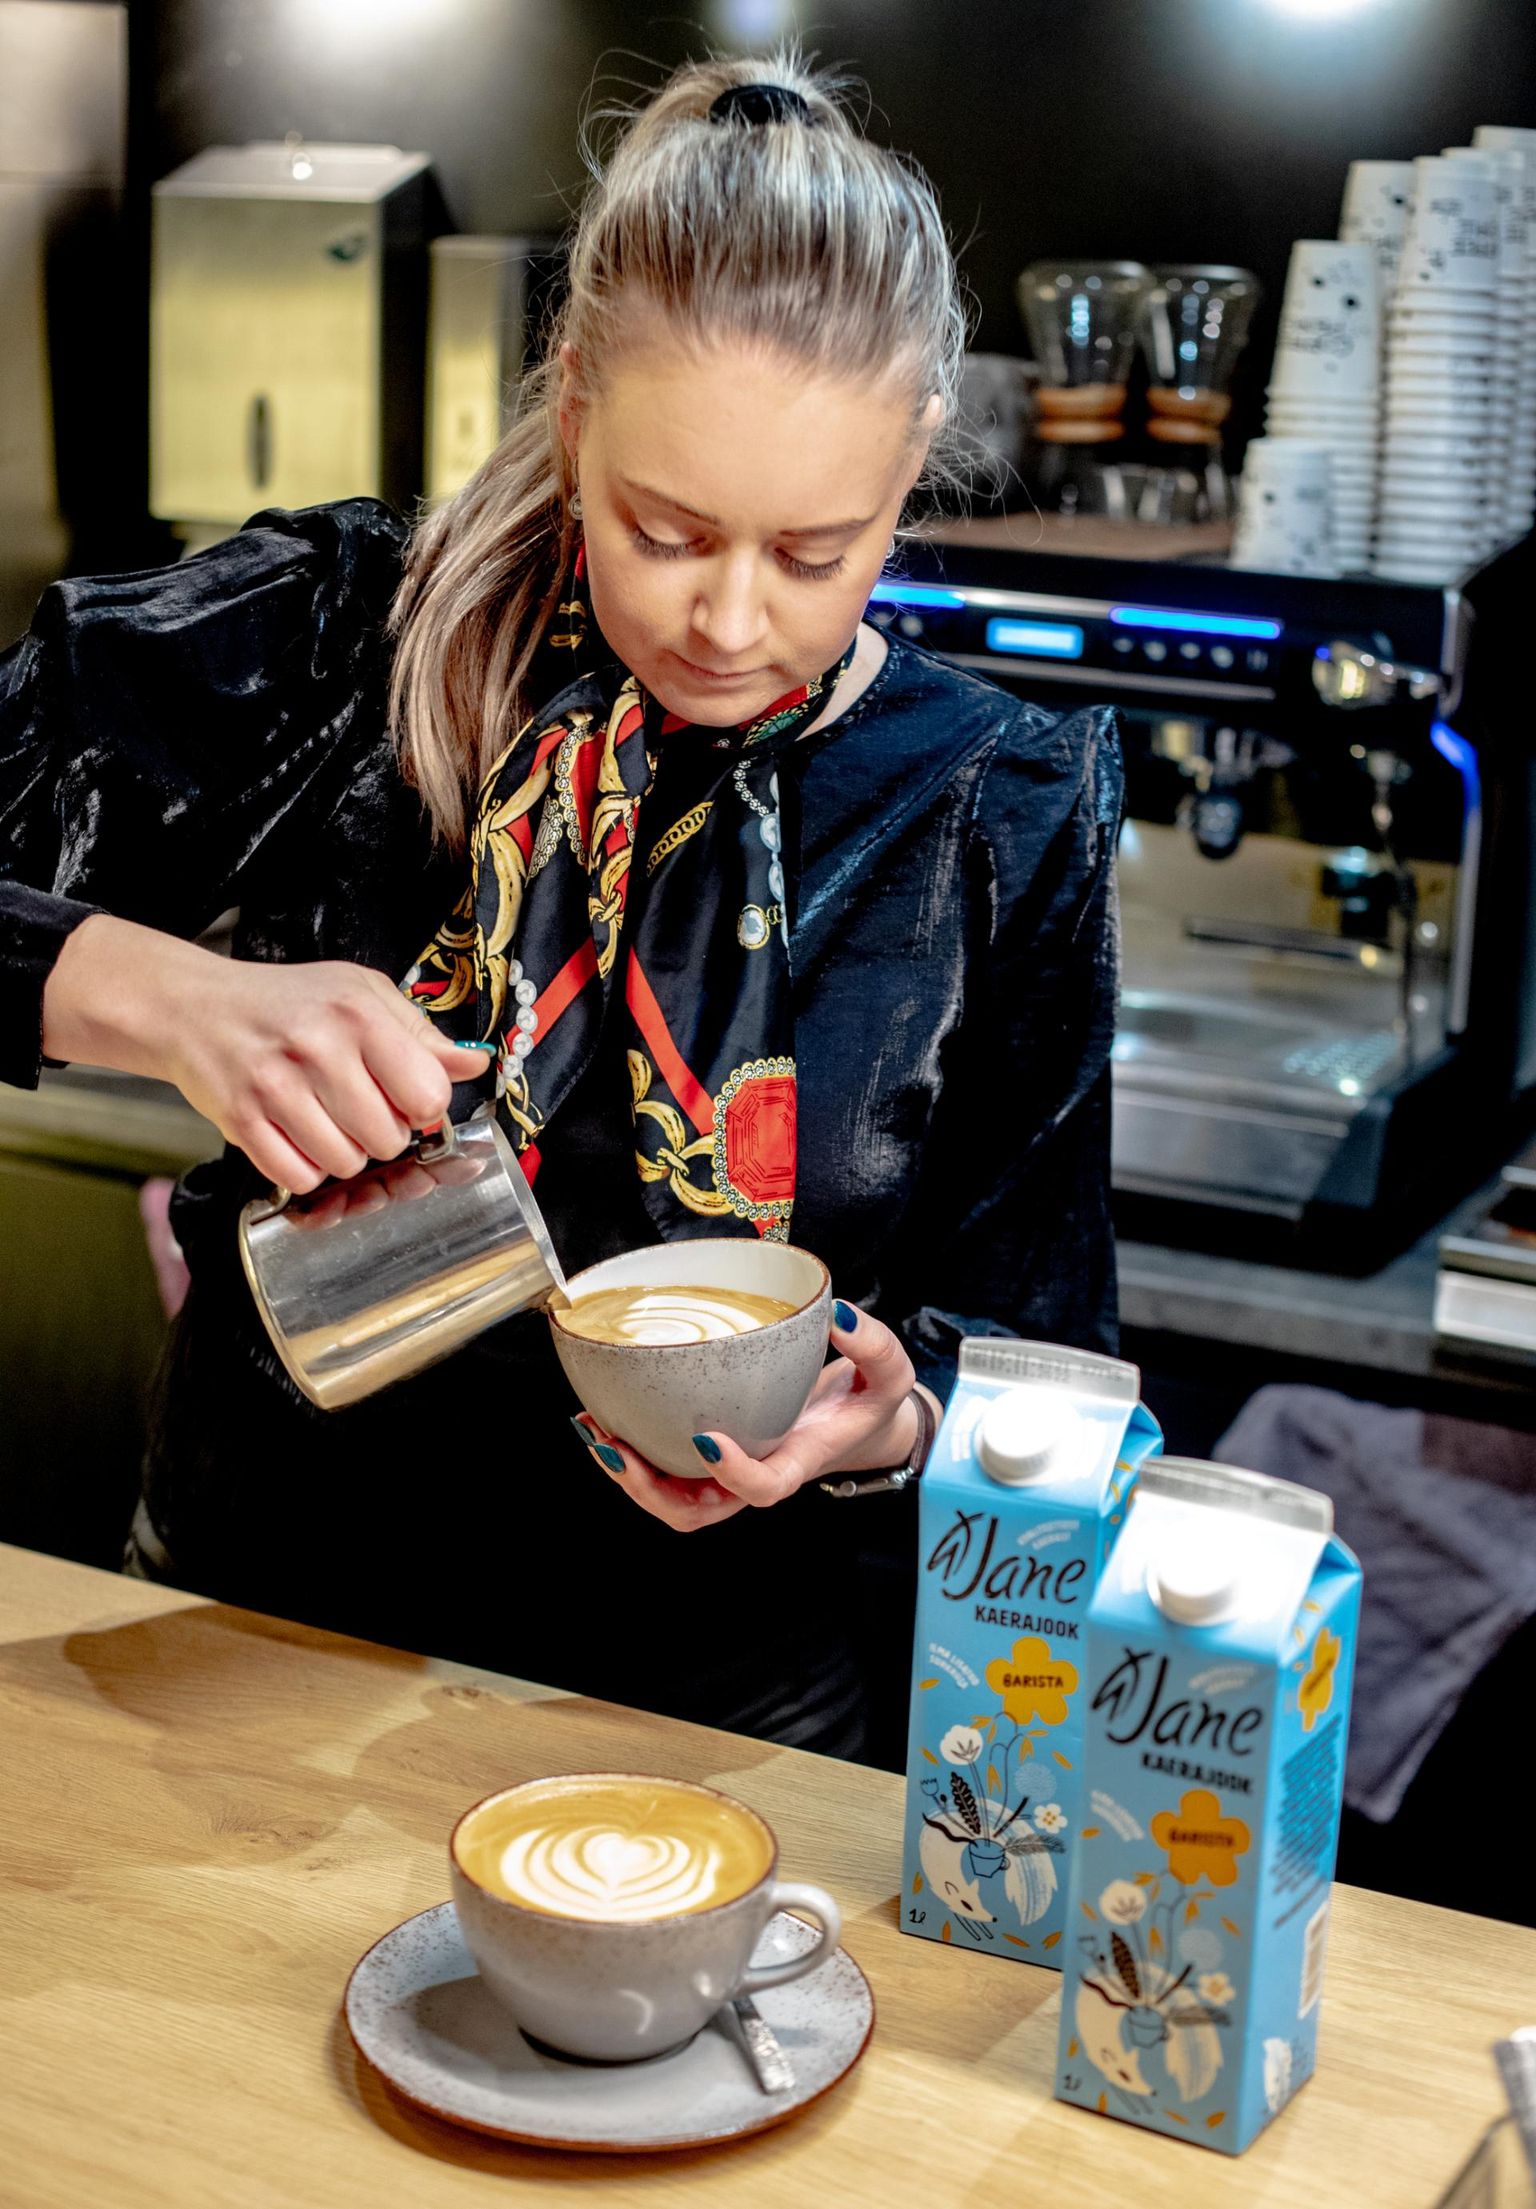 Tallinnas Koidula tänaval asuva Gourmet Coffee kohviku juhataja ja barista Heleriin Adelberti sõnul on kaerajoogist saanud lehmapiimale kõige populaarsem taimne alternatiiv, lükates kõrvale ka laktoosivaba piima.